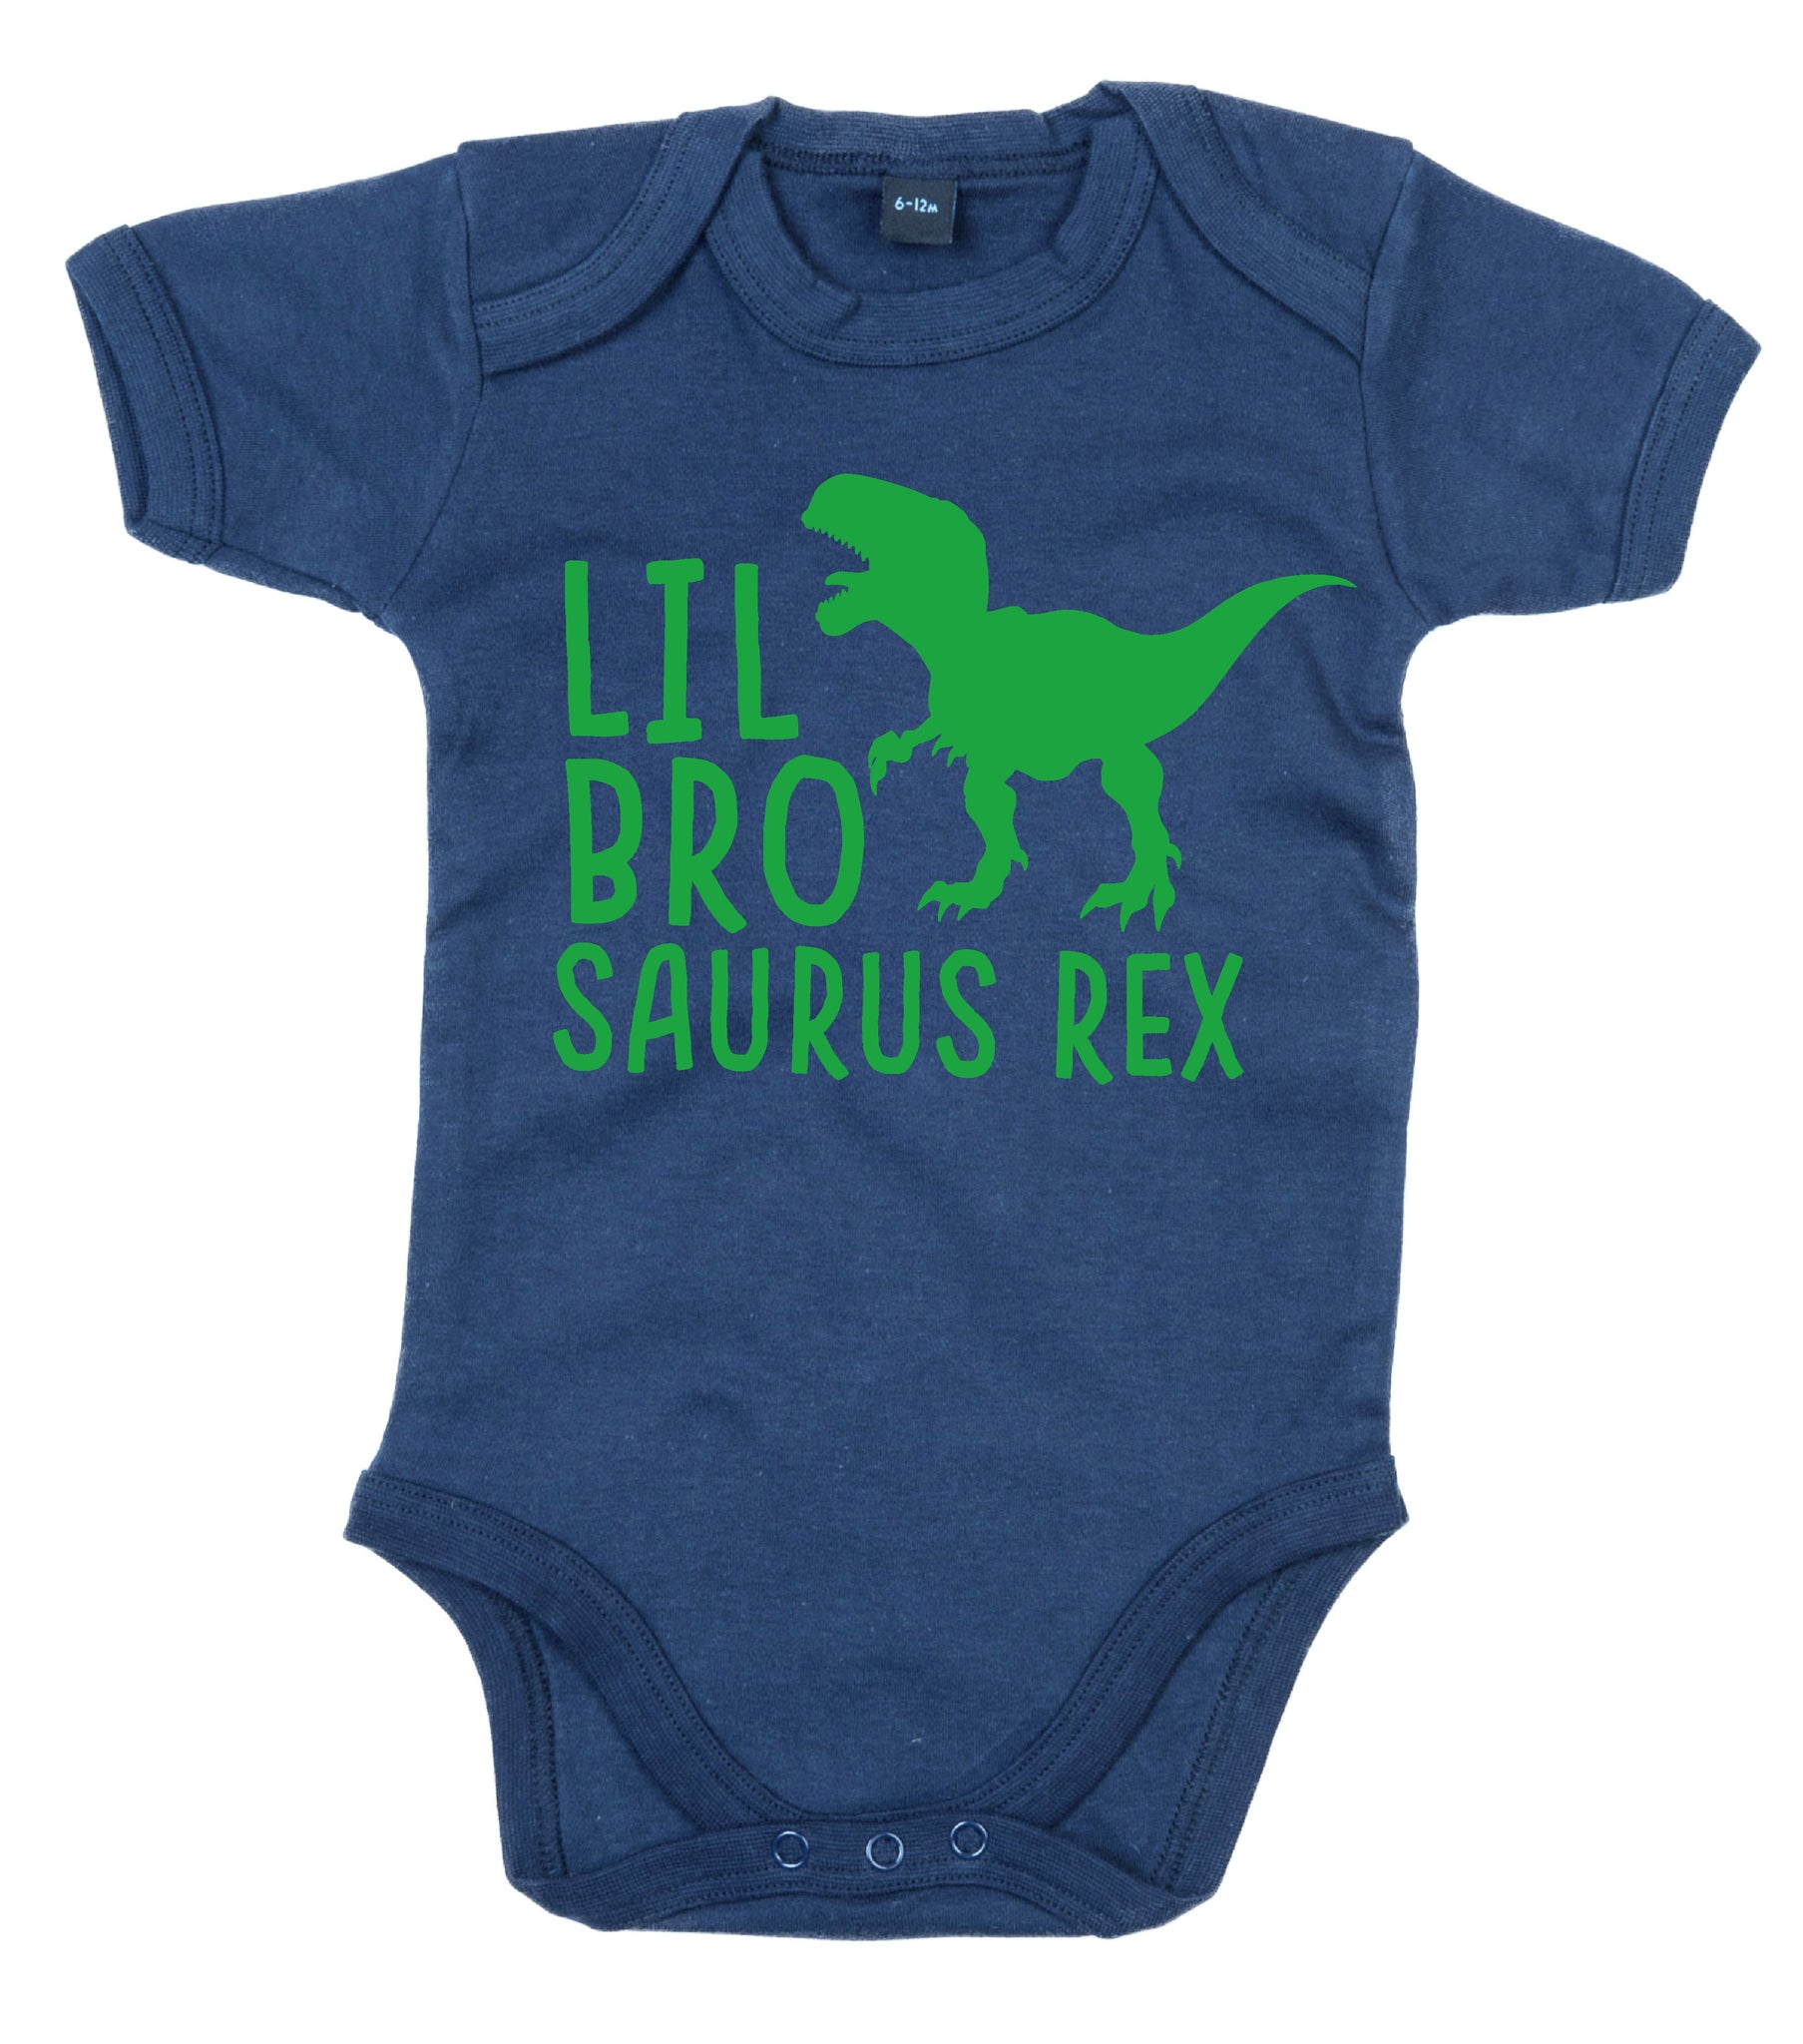 'Lil Bro Saurus Rex' Baby Bodysuit